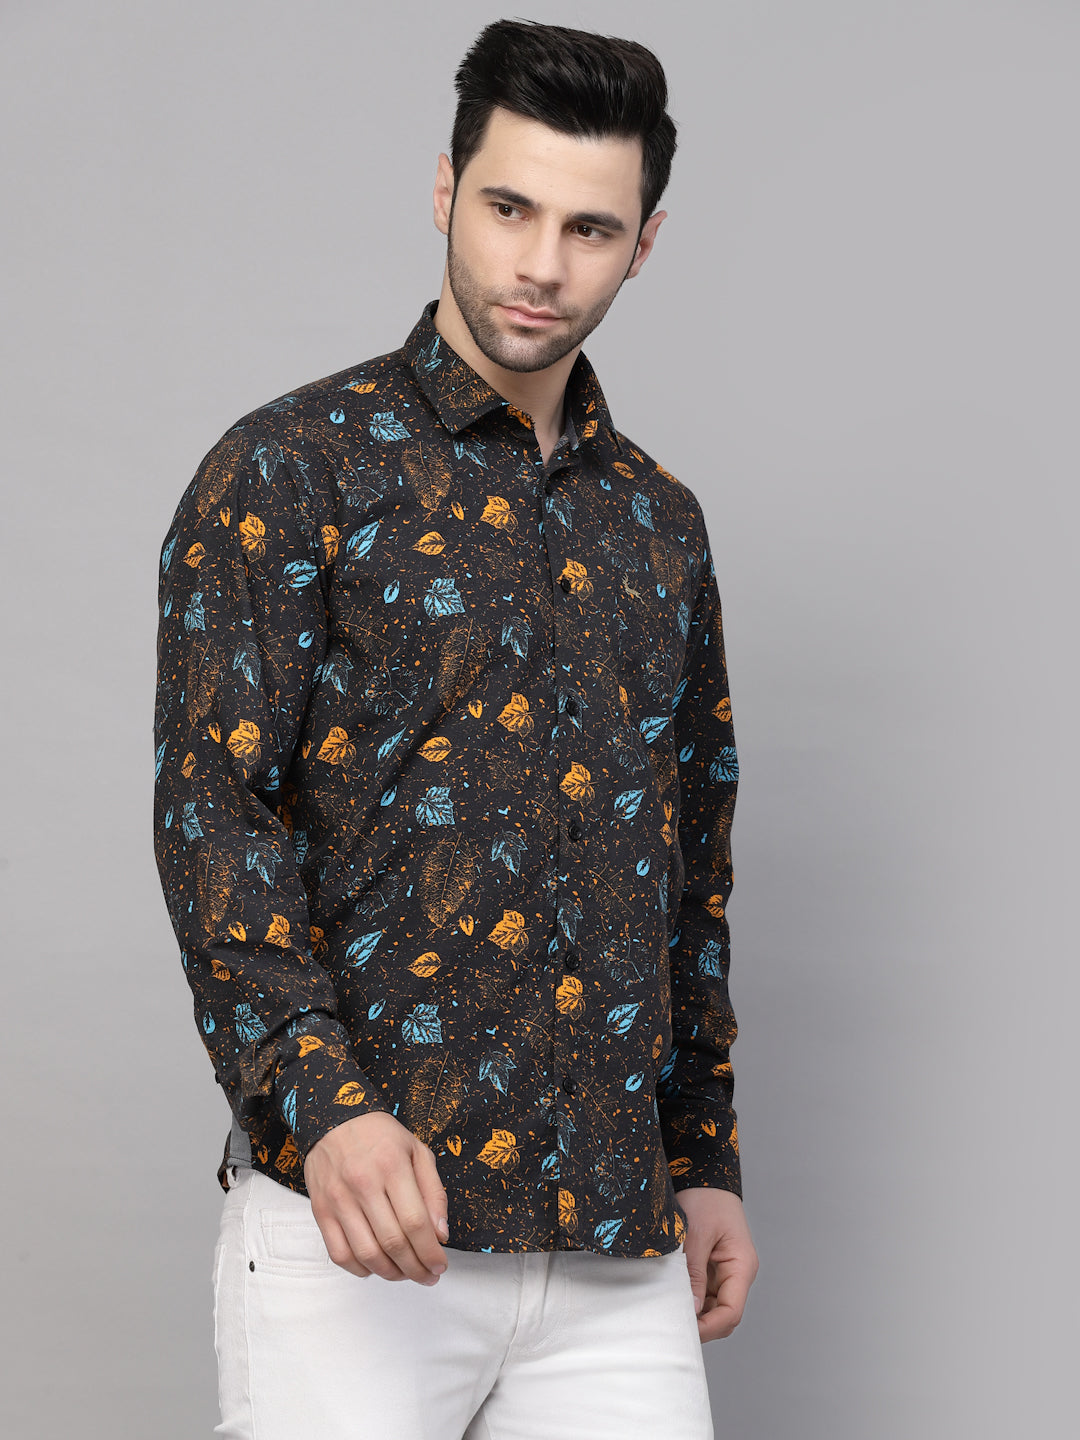 Valbone Men’s Digital Print Blue & Brown Leaf Printed Regular Fit Casual Shirt Full Sleeves